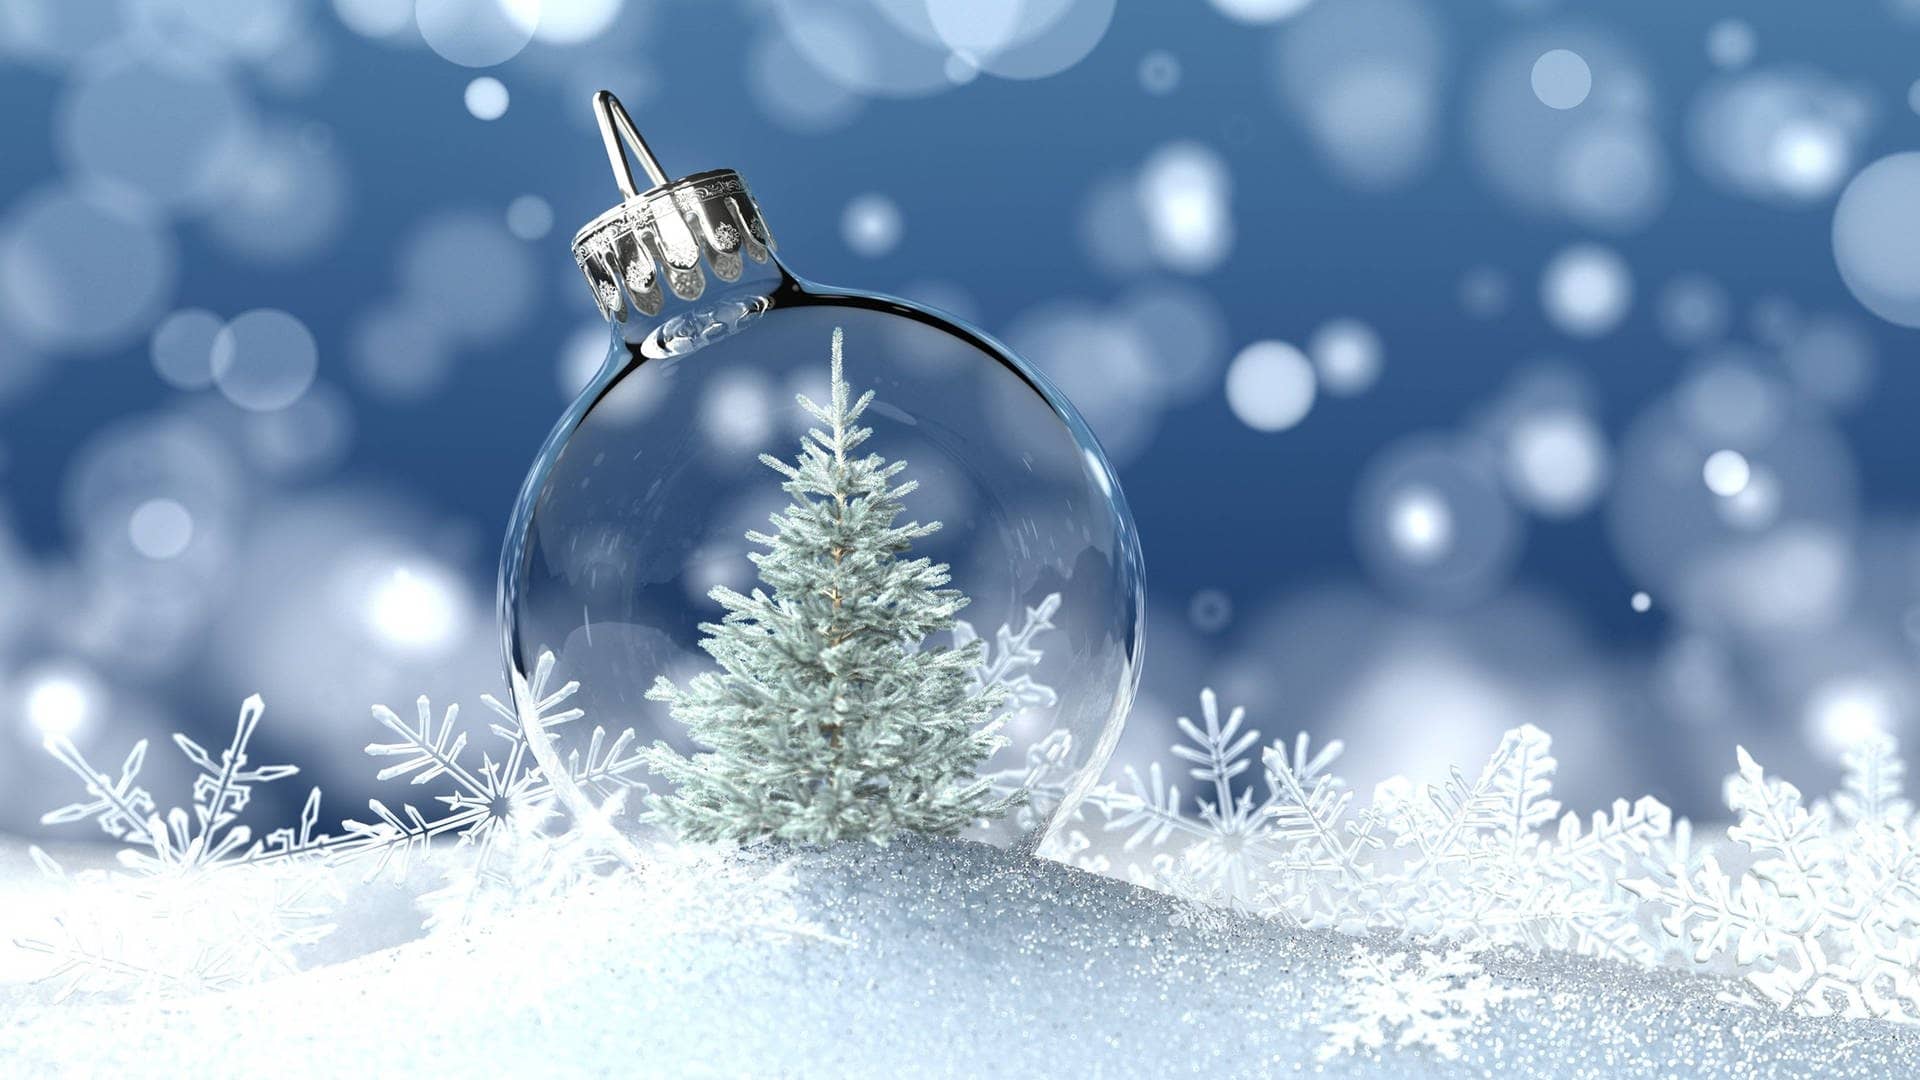 Weiße Weihnachten: Schneekugel mit Weihnachtsbaum und Eiskristallen liegt auf Schnee.